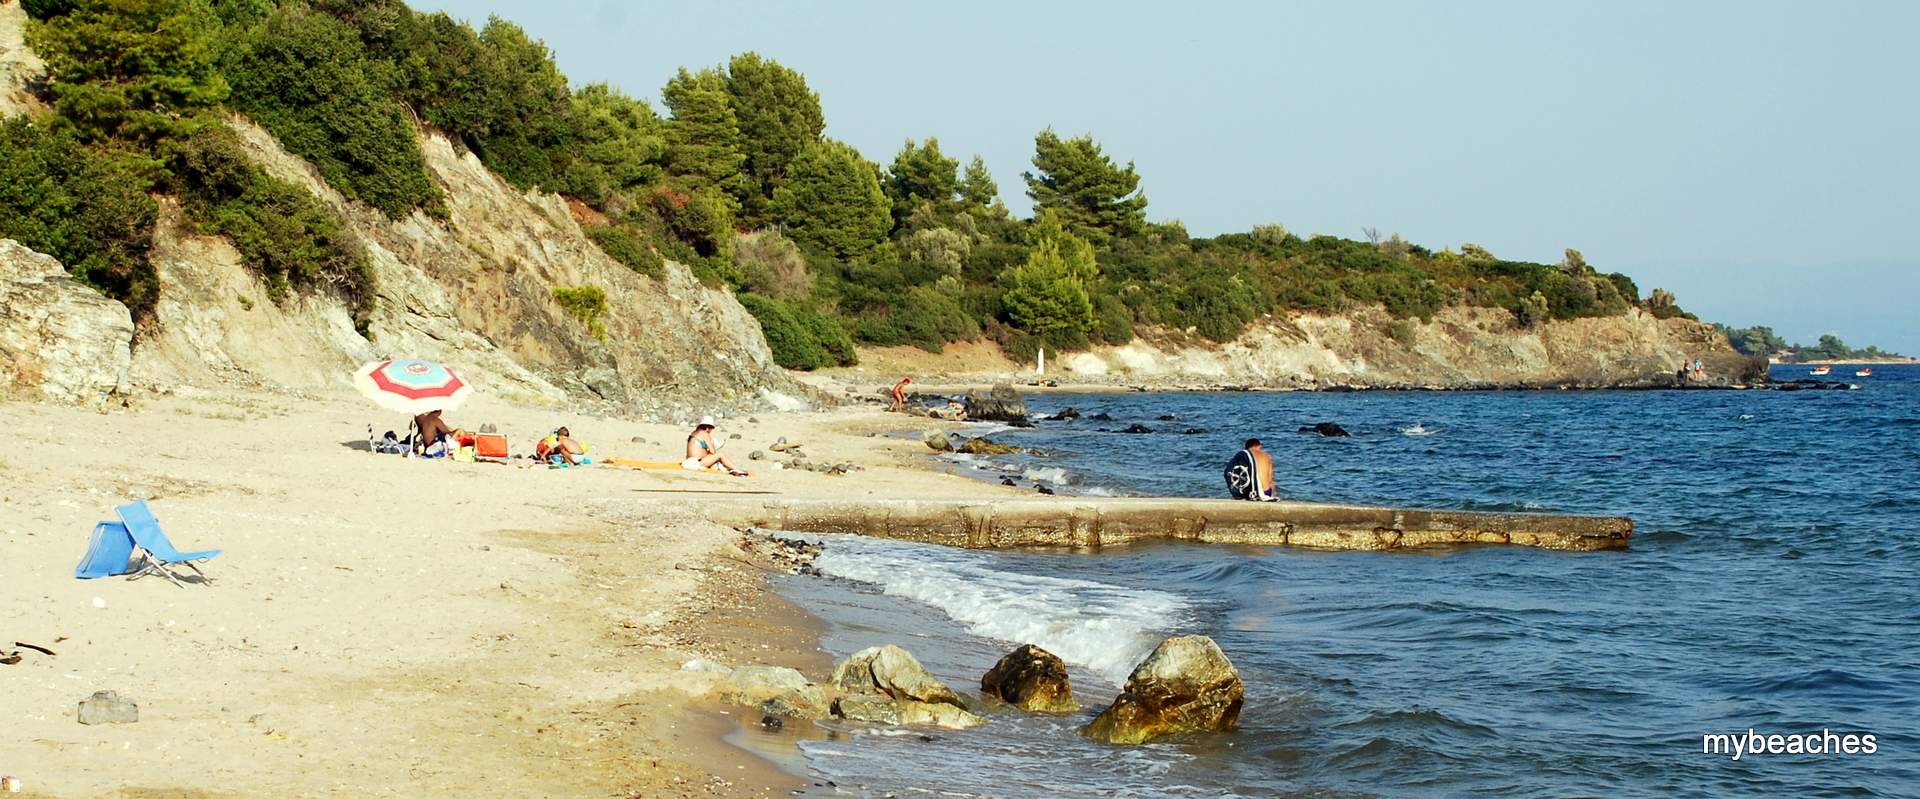 Vatopedi beach, Toroneos gulf, Halkidiki, Greece